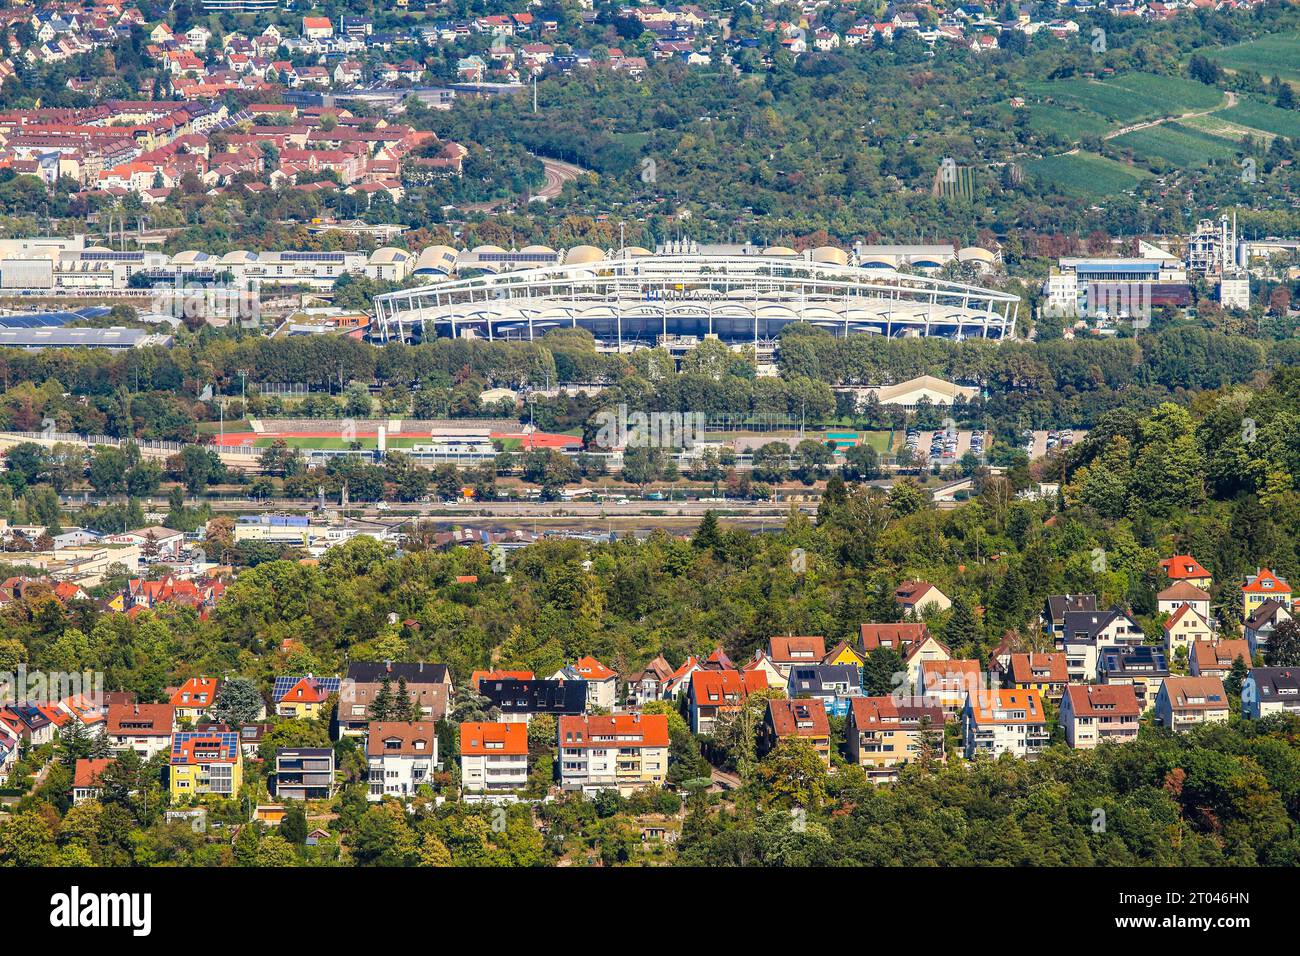 MHP Arena ou Neckarstadion, stade de football du VfB Stuttgart, vu depuis la plate-forme de visionnement de la tour de télévision, haute de 217 mètres et la première tour de télévision Banque D'Images